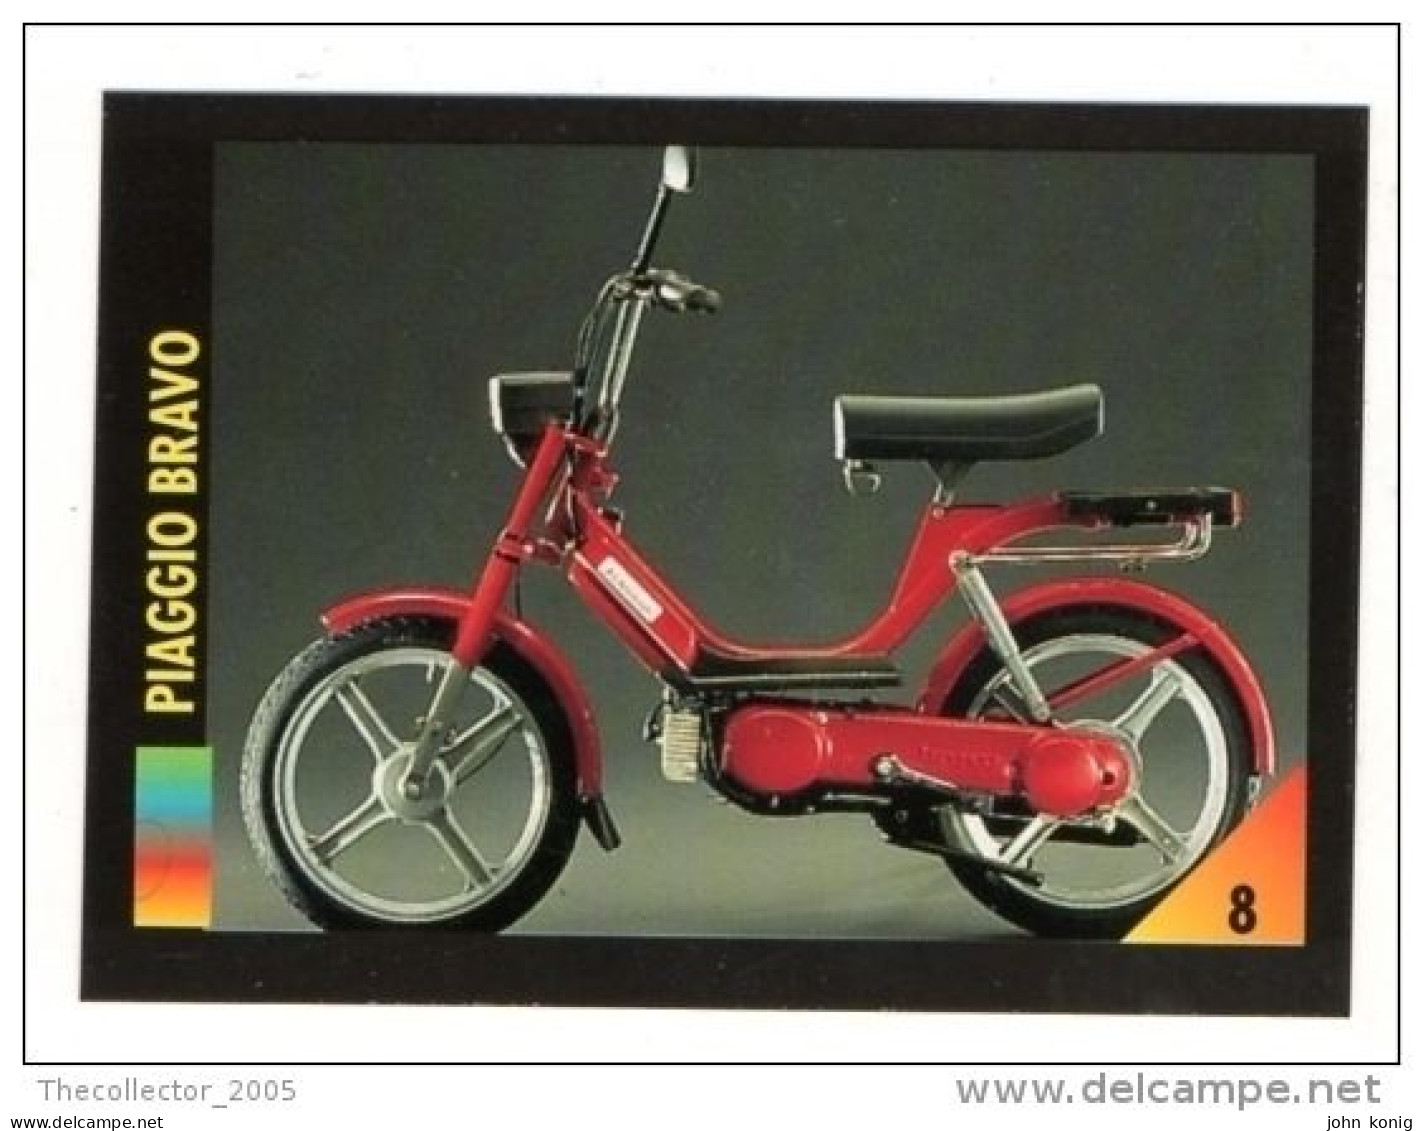 FIGURINA TRADING CARDS - LA MIA MOTO - MY MOTORBIKE - MASTERS EDIZIONI (1993) - PIAGGIO BRAVO - Auto & Verkehr